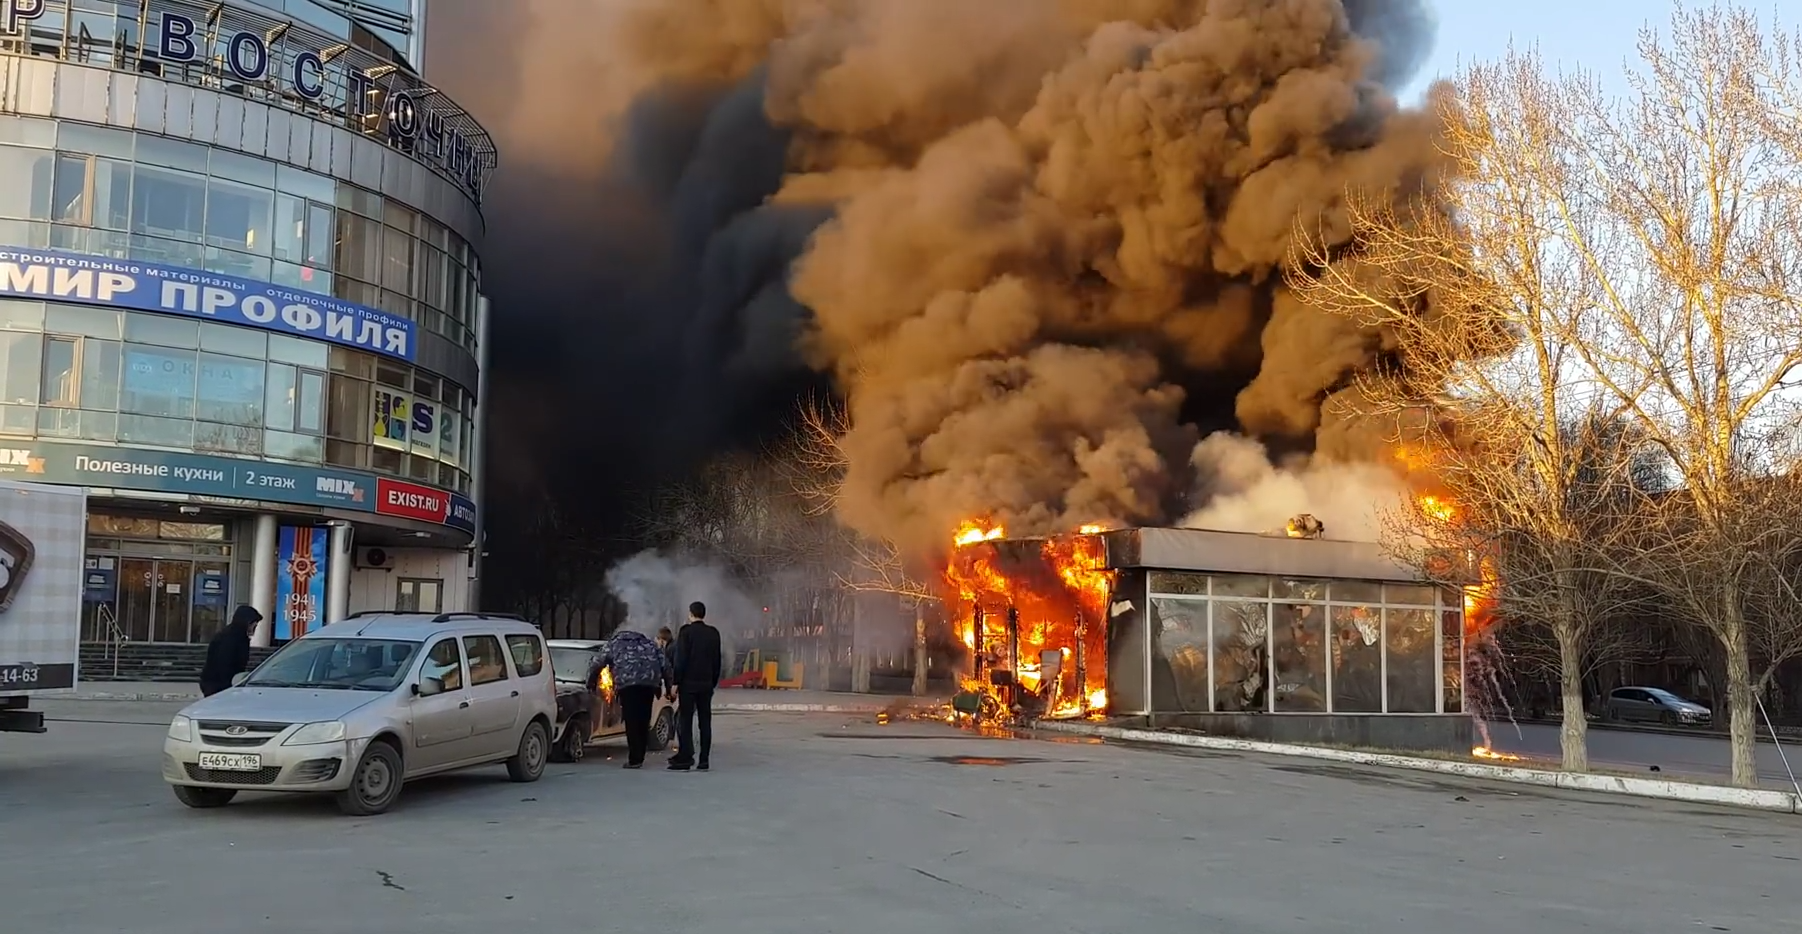 Закусочная «Югославия гриль» сгорела в Екатеринбурге